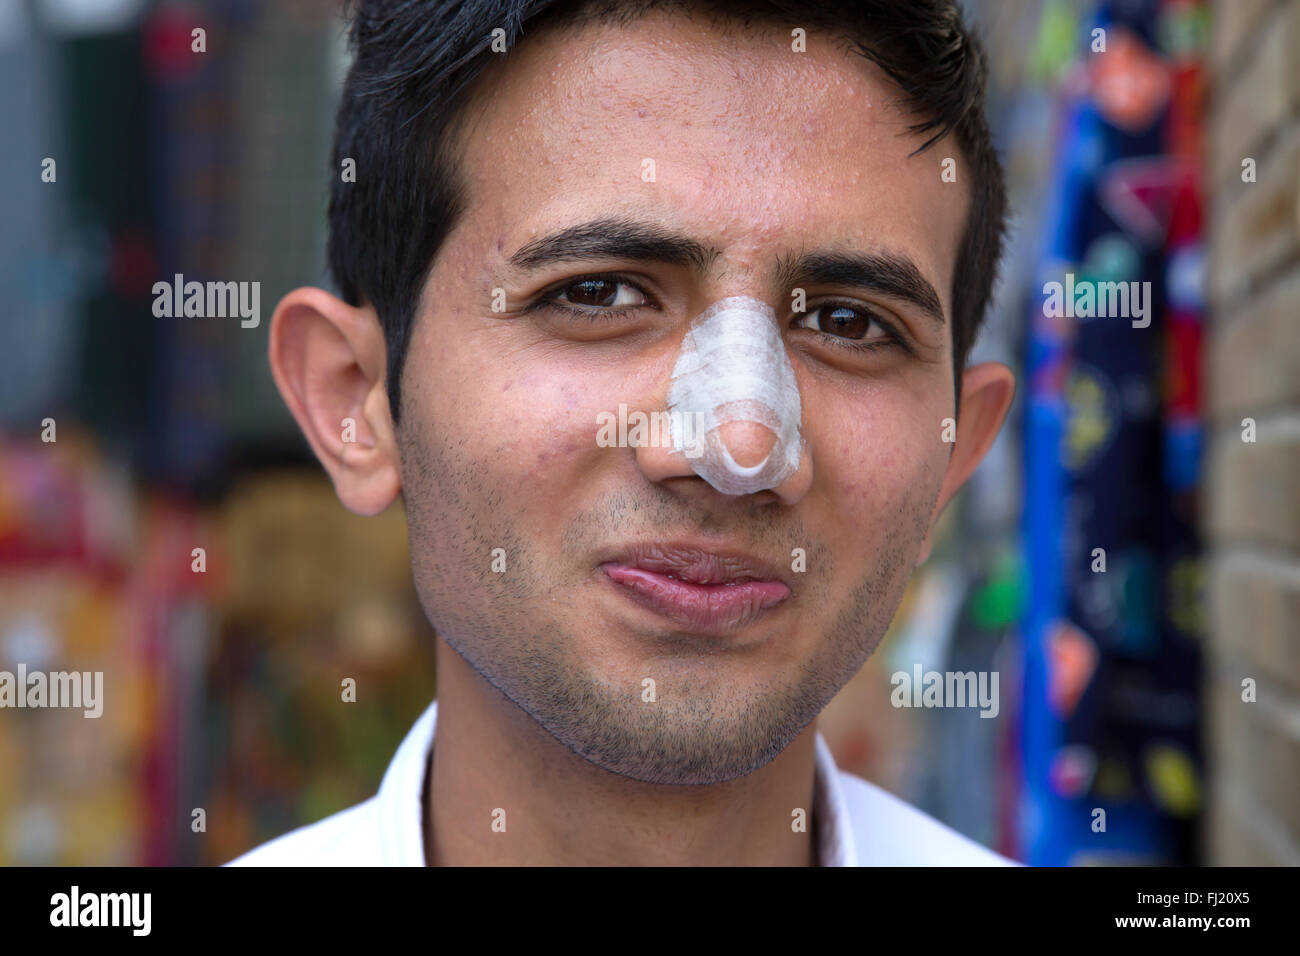 Ritratto di uomo iraniano con bendaggio a causa dei recenti naso chirurgia plastica, Iran Foto Stock